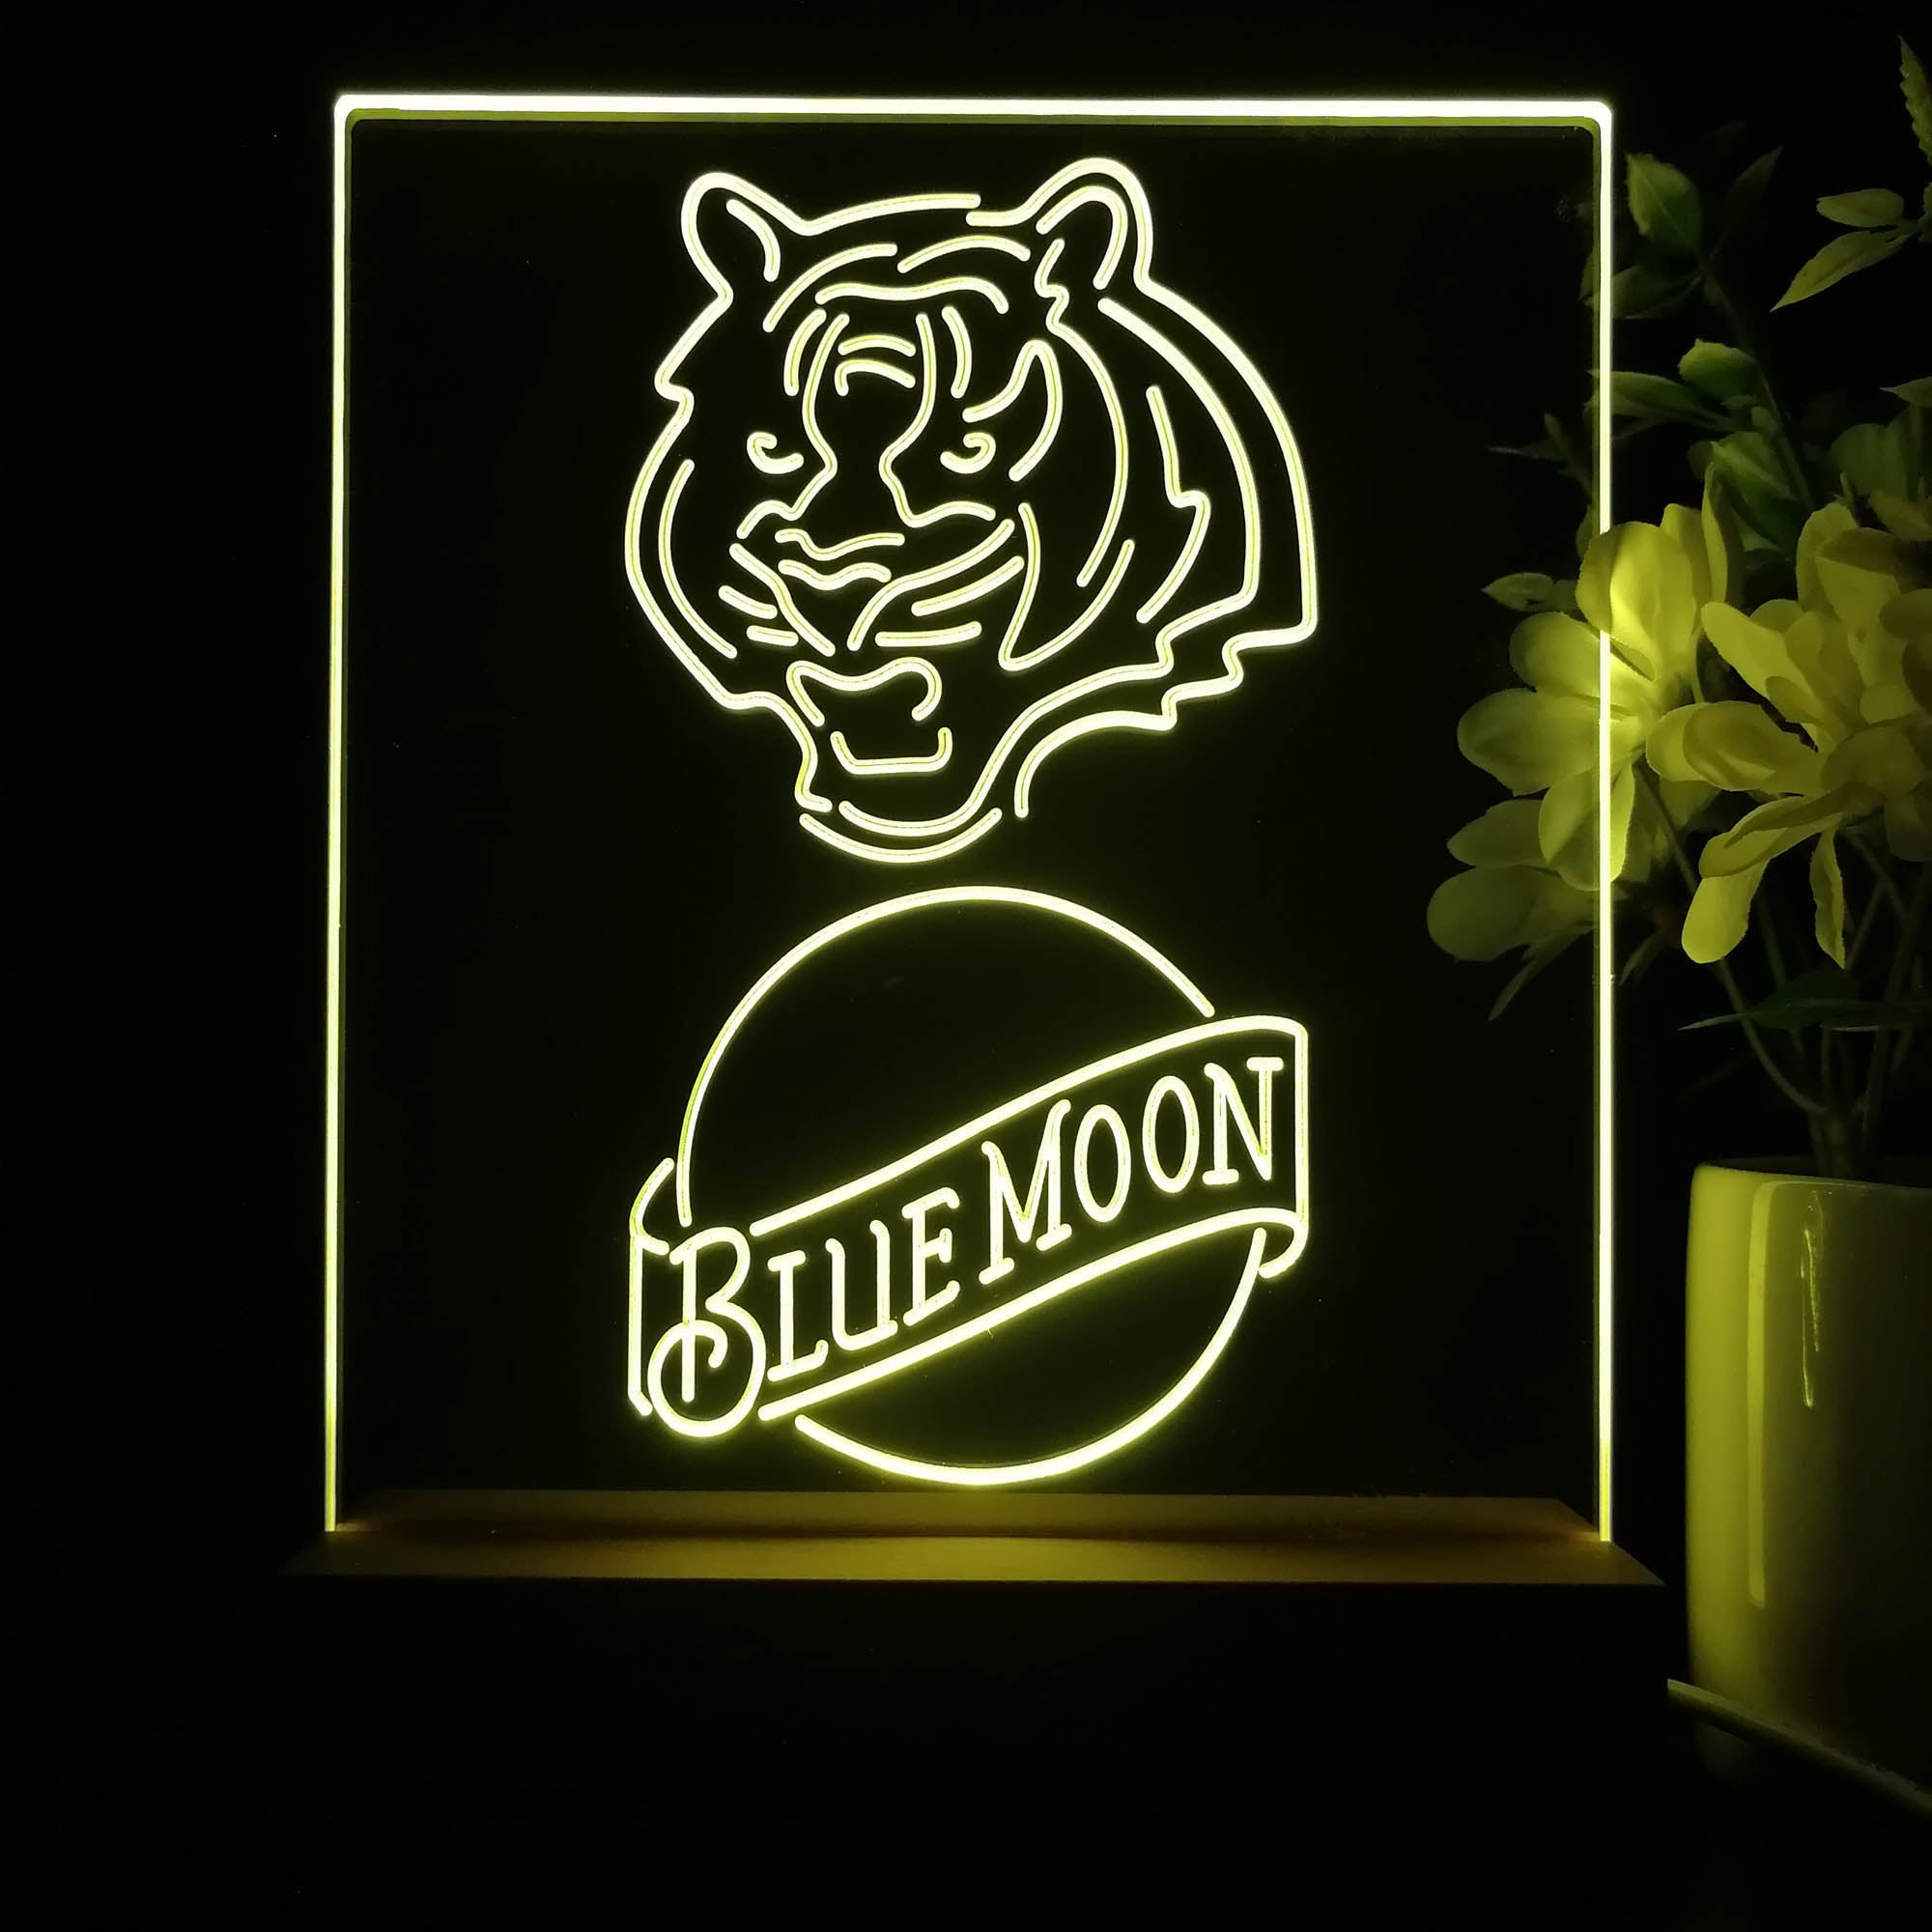 Cincinnati Bengals Blue Moon Neon Sign Pub Bar Lamp